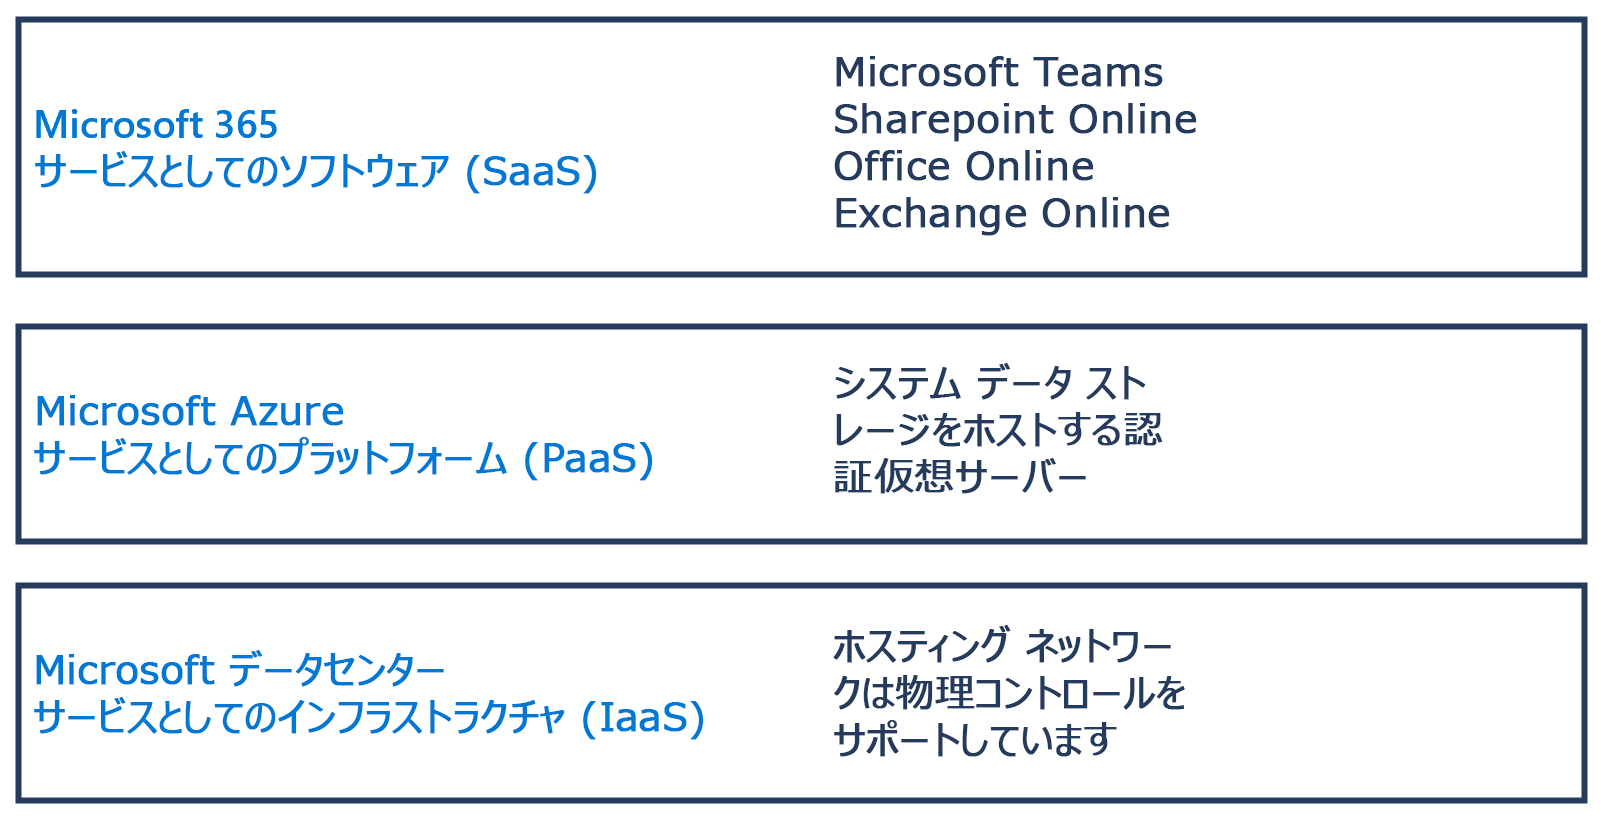 サービスとしての Microsoft 365 ソフトウェア (Saas)、サービスとしての Microsoft Azure プラットフォーム (PaaS)、およびサービスとしての Microsoft データ センター インフラストラクチャ (IaaS) の違いを示す図。